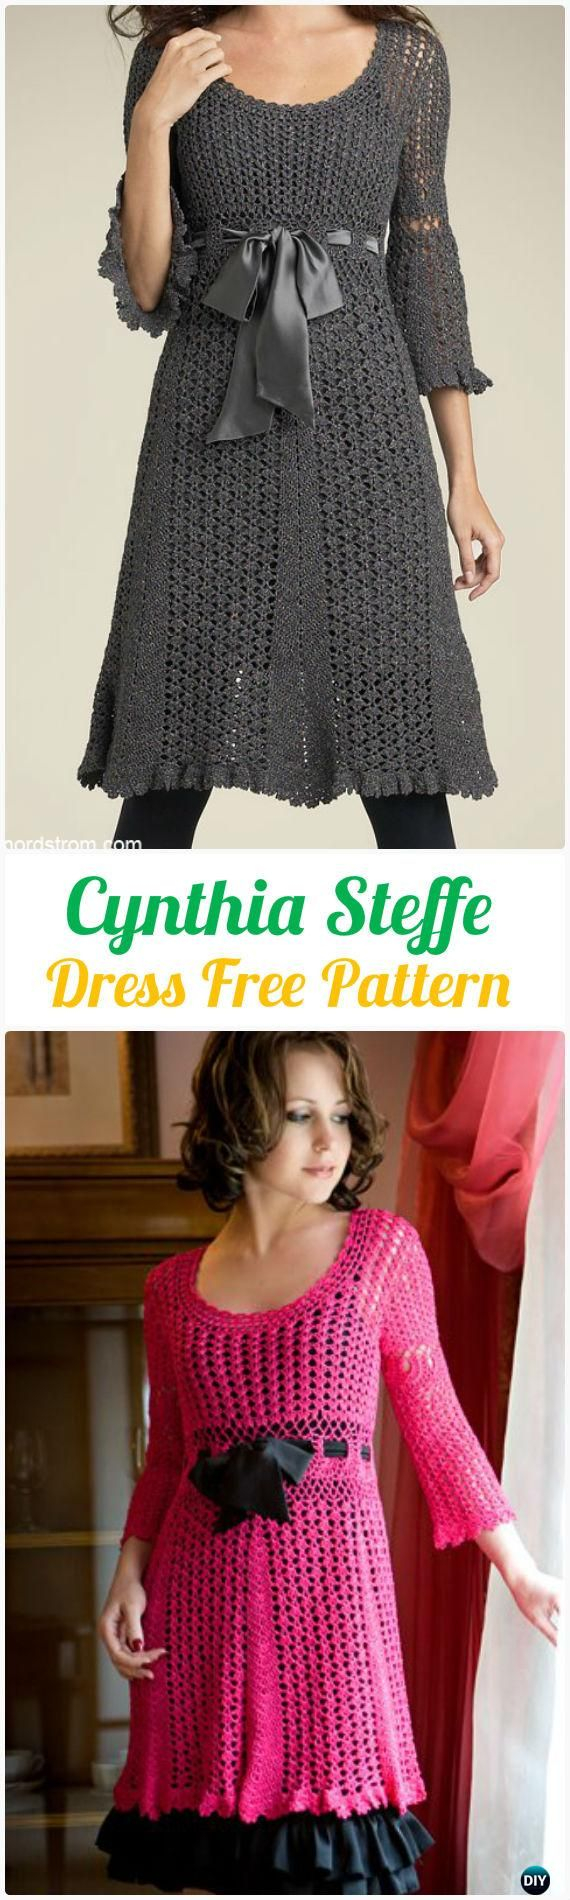 Free Crochet Patterns Womens Sweaters Womens Sweater Knitting Patterns Crochet Cynthia Steffe Dress Free